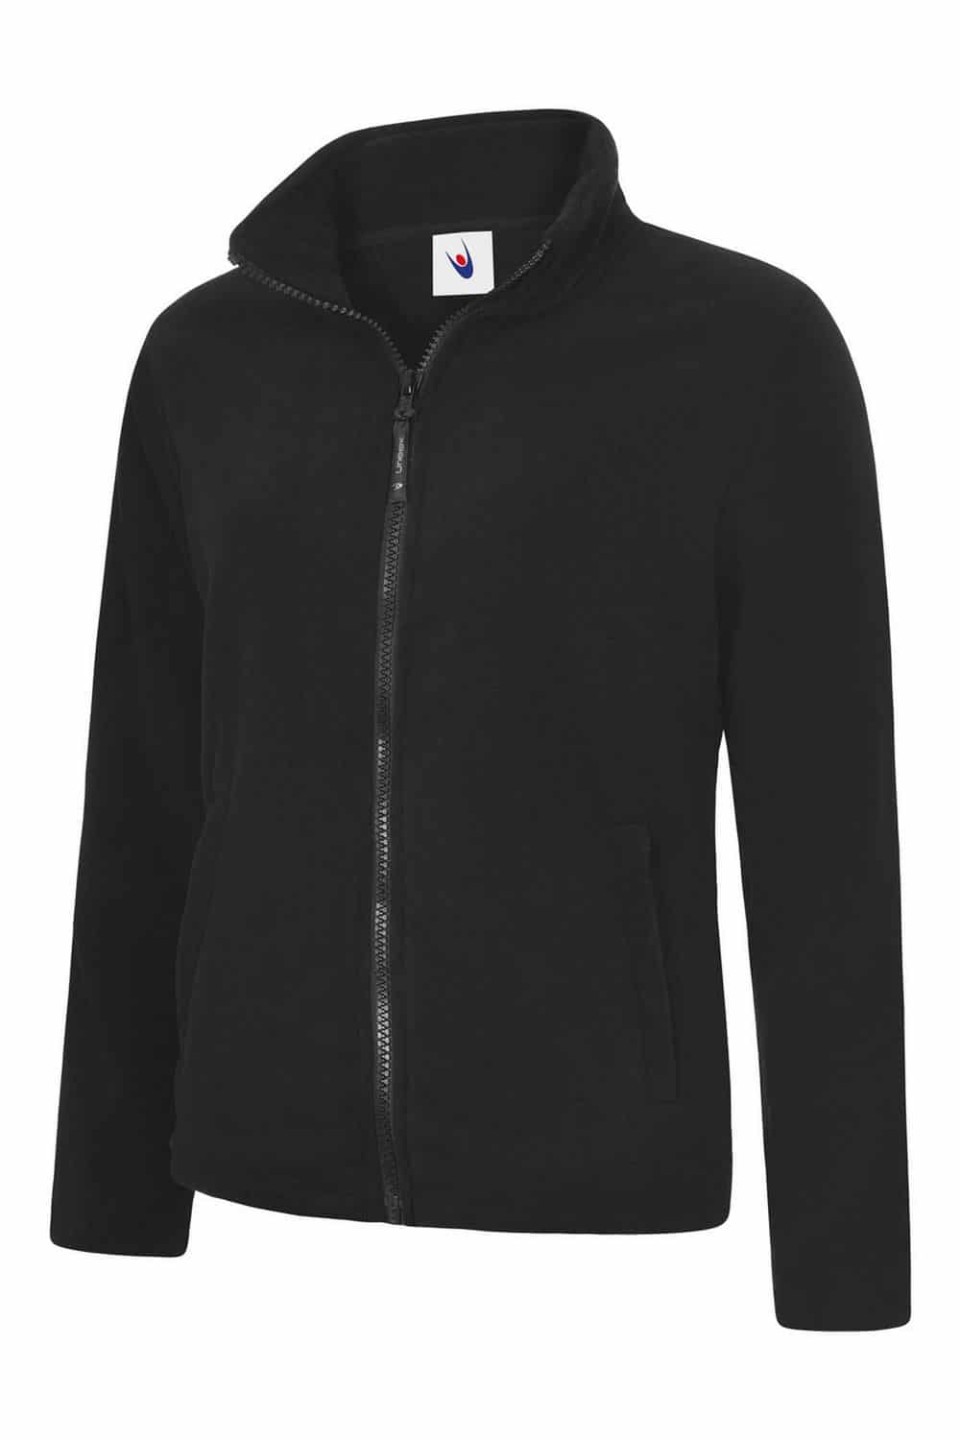 Uneek Ladies Classic Full Zip Fleece Jacket - Industrial Workwear